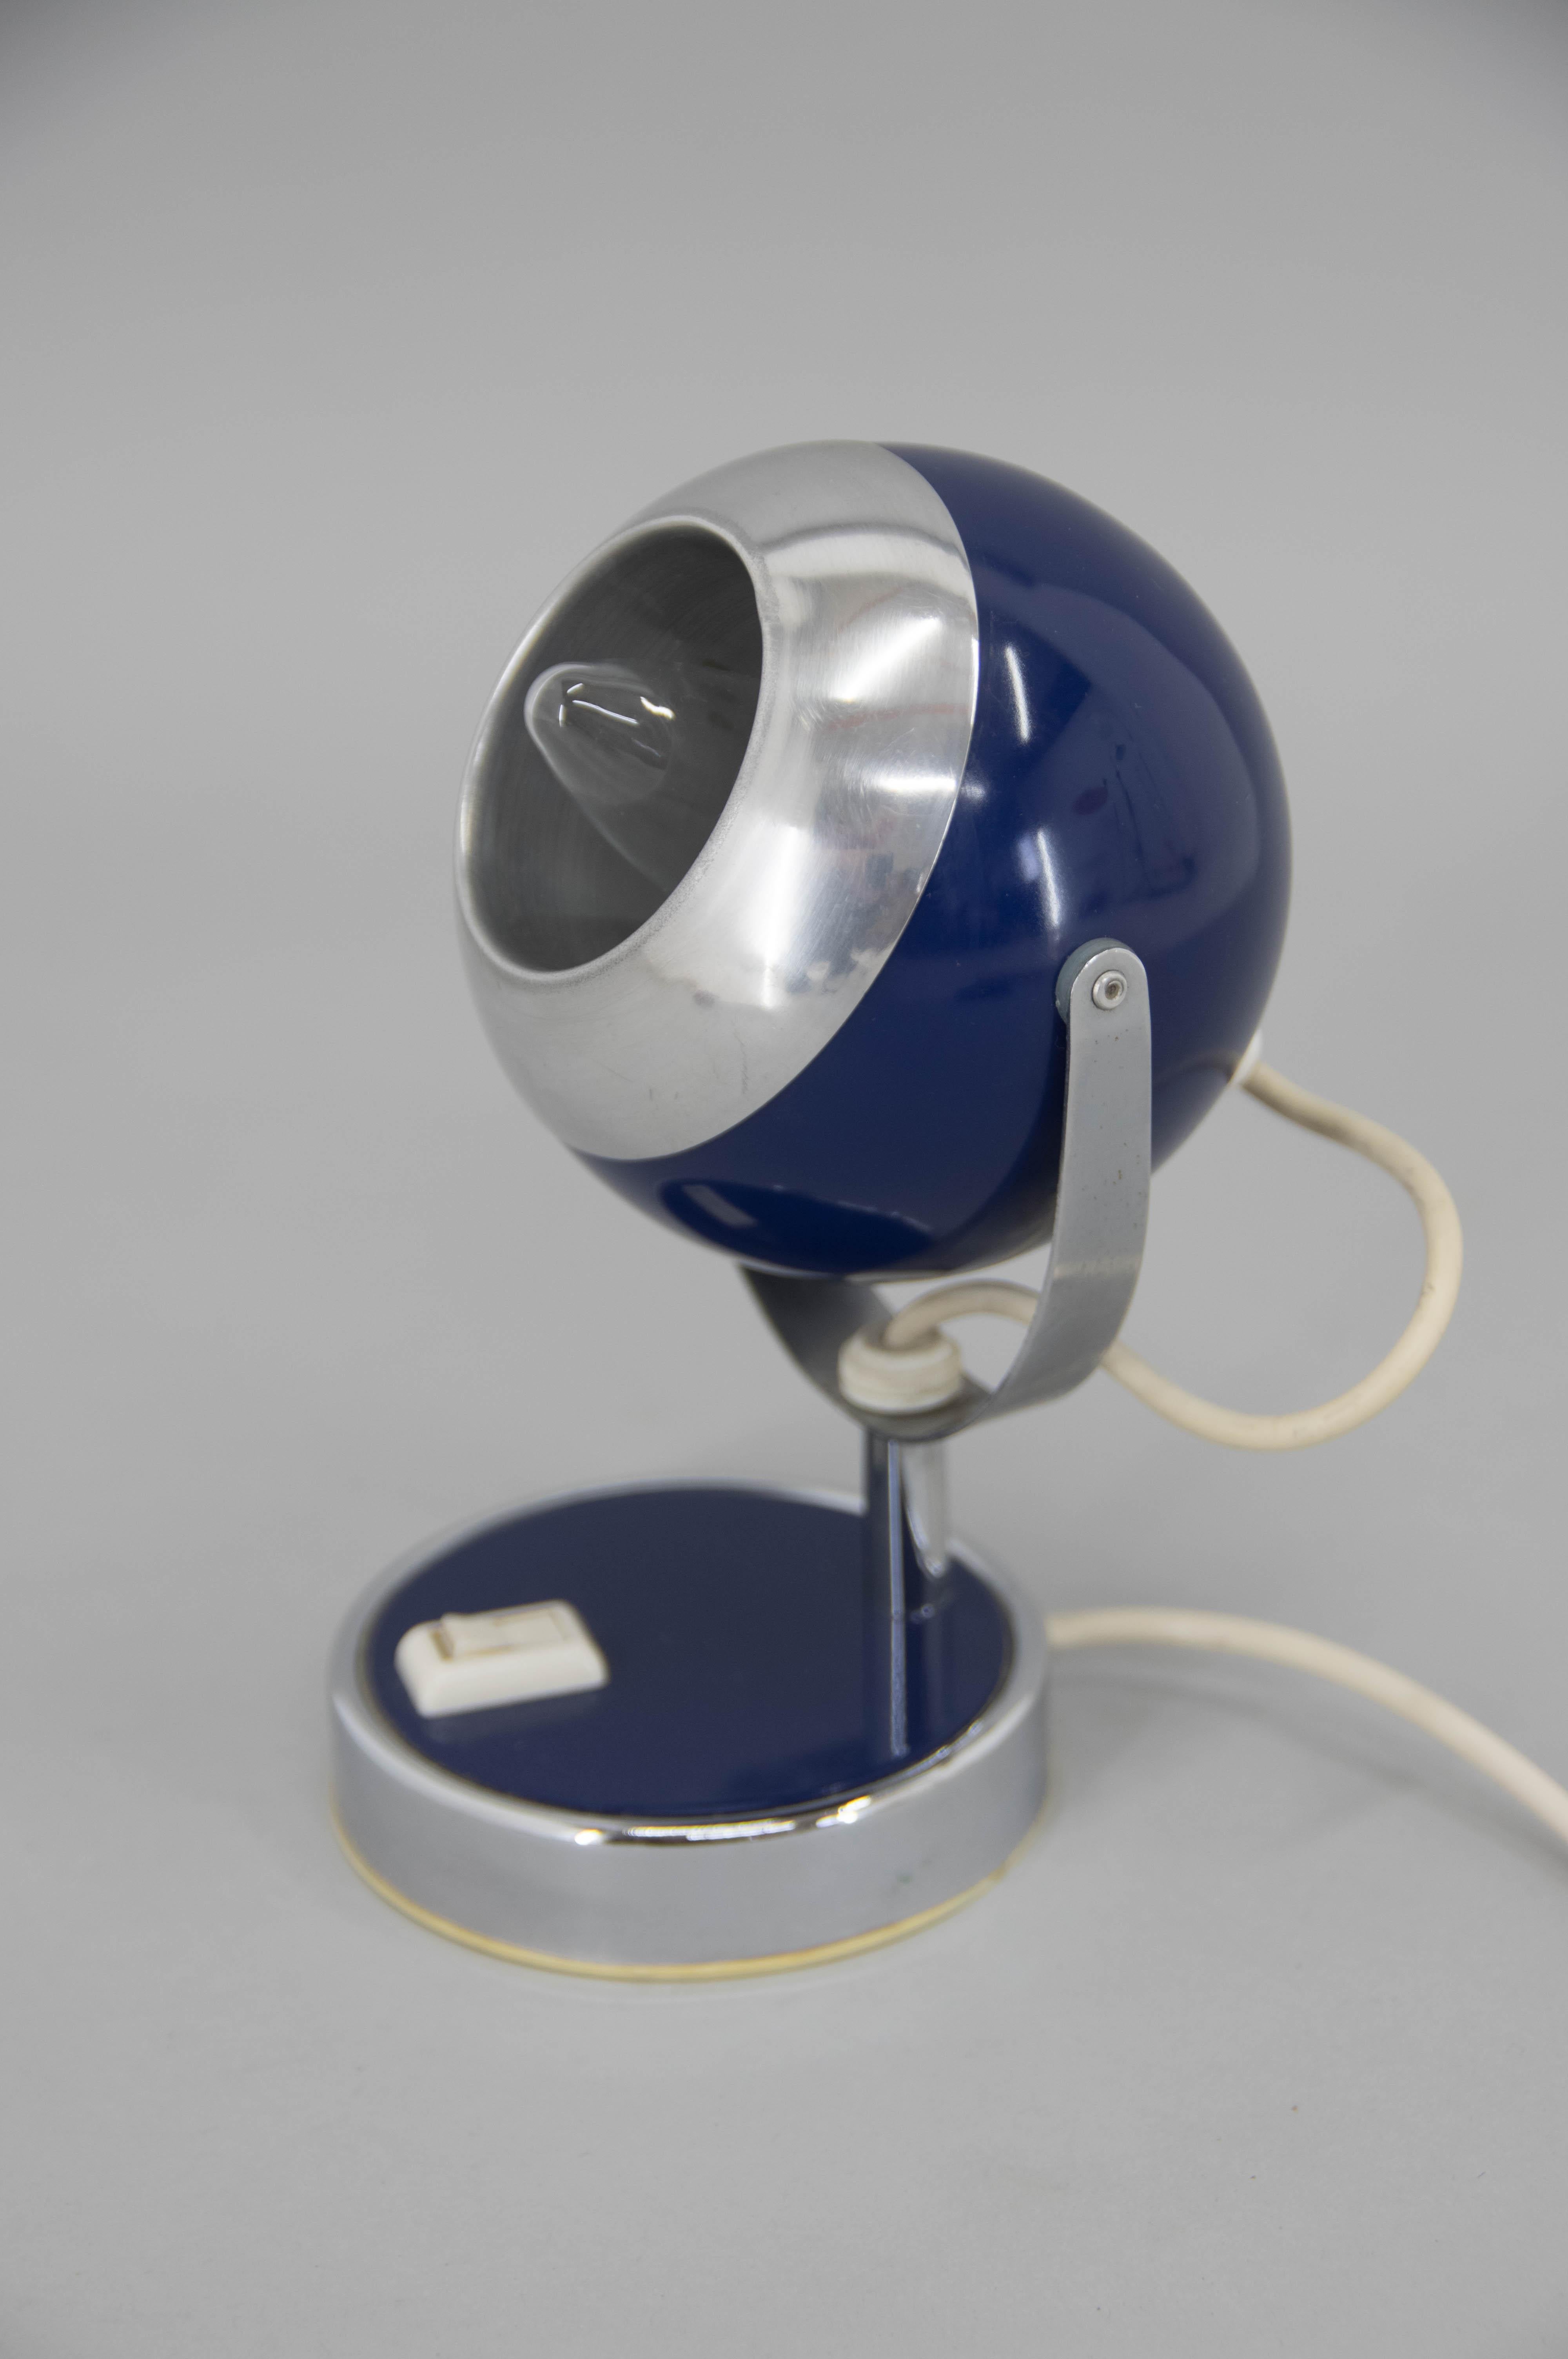 Blaue Eye Ball Tischlampe mit flexiblem Schirm.
Sehr guter Originalzustand.
1x25W, E12-E14 Glühbirne
Inklusive US-Steckeradapter.